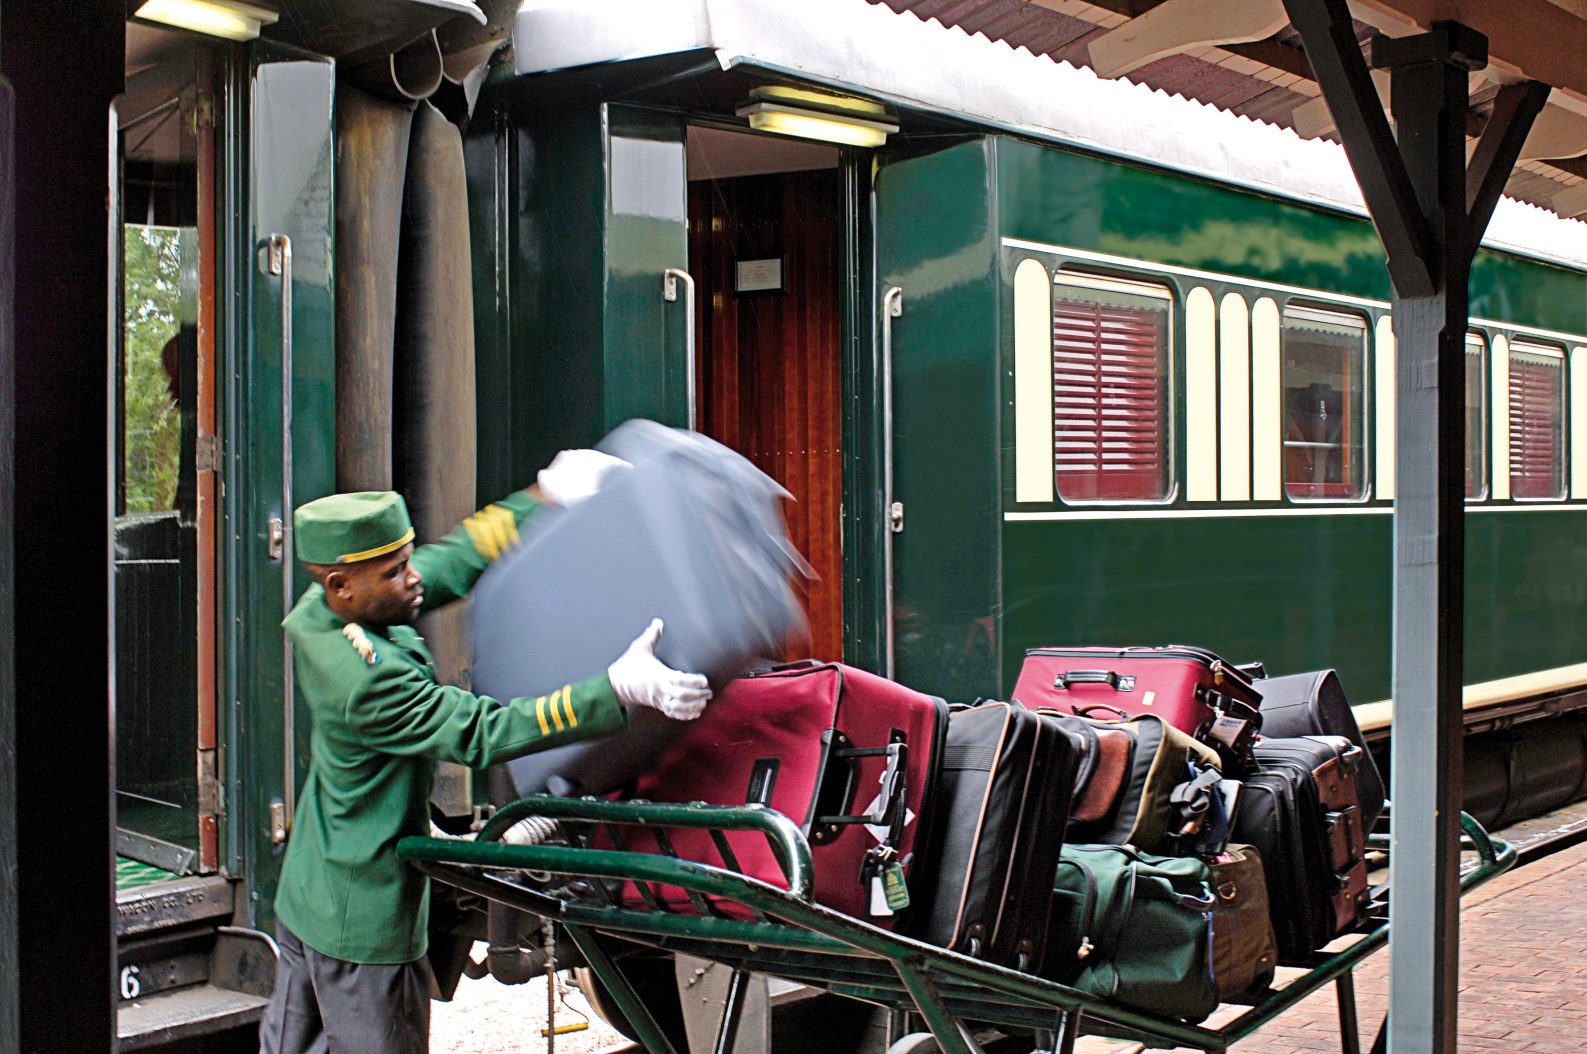 Правила перевозок багажа железнодорожным транспортом